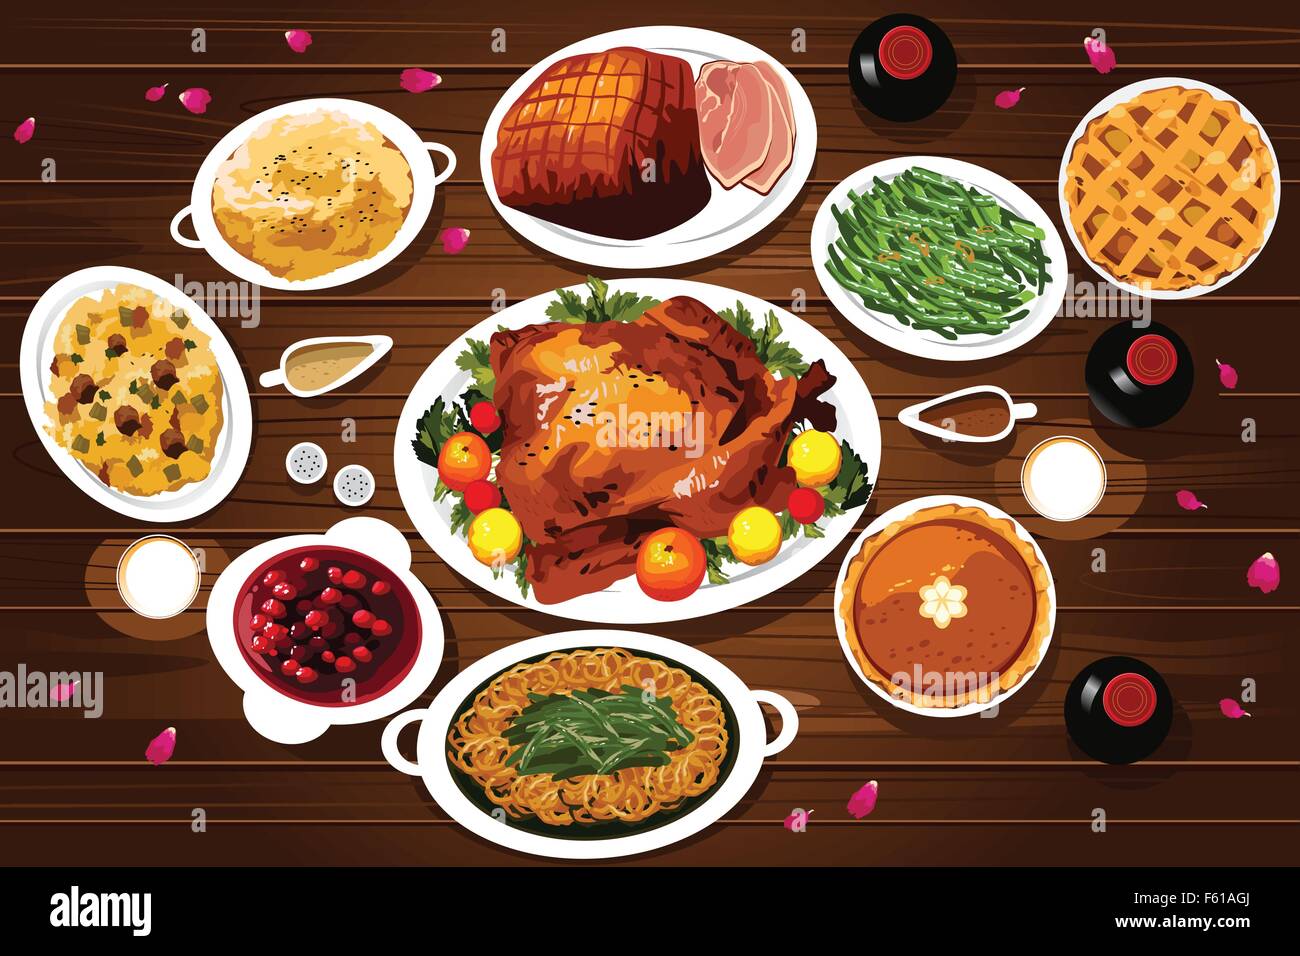 Una illustrazione vettoriale di cibo di ringraziamento la cena sul tavolo visto dal di sopra Illustrazione Vettoriale